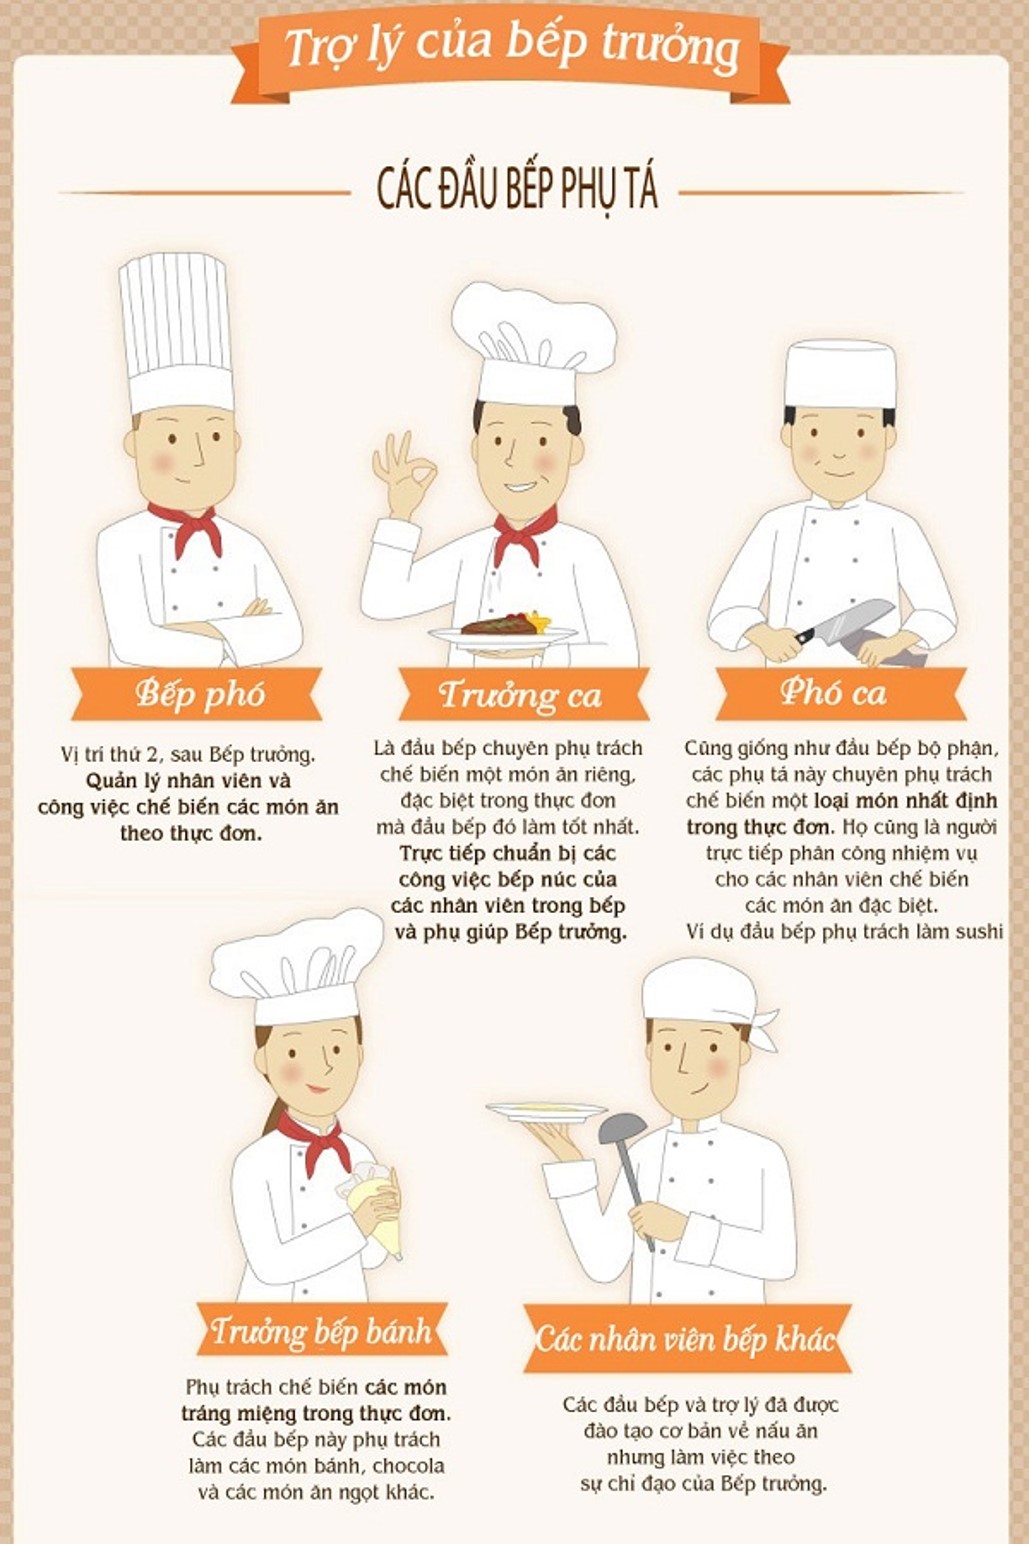 Ý nghĩa của đồng phục bếp